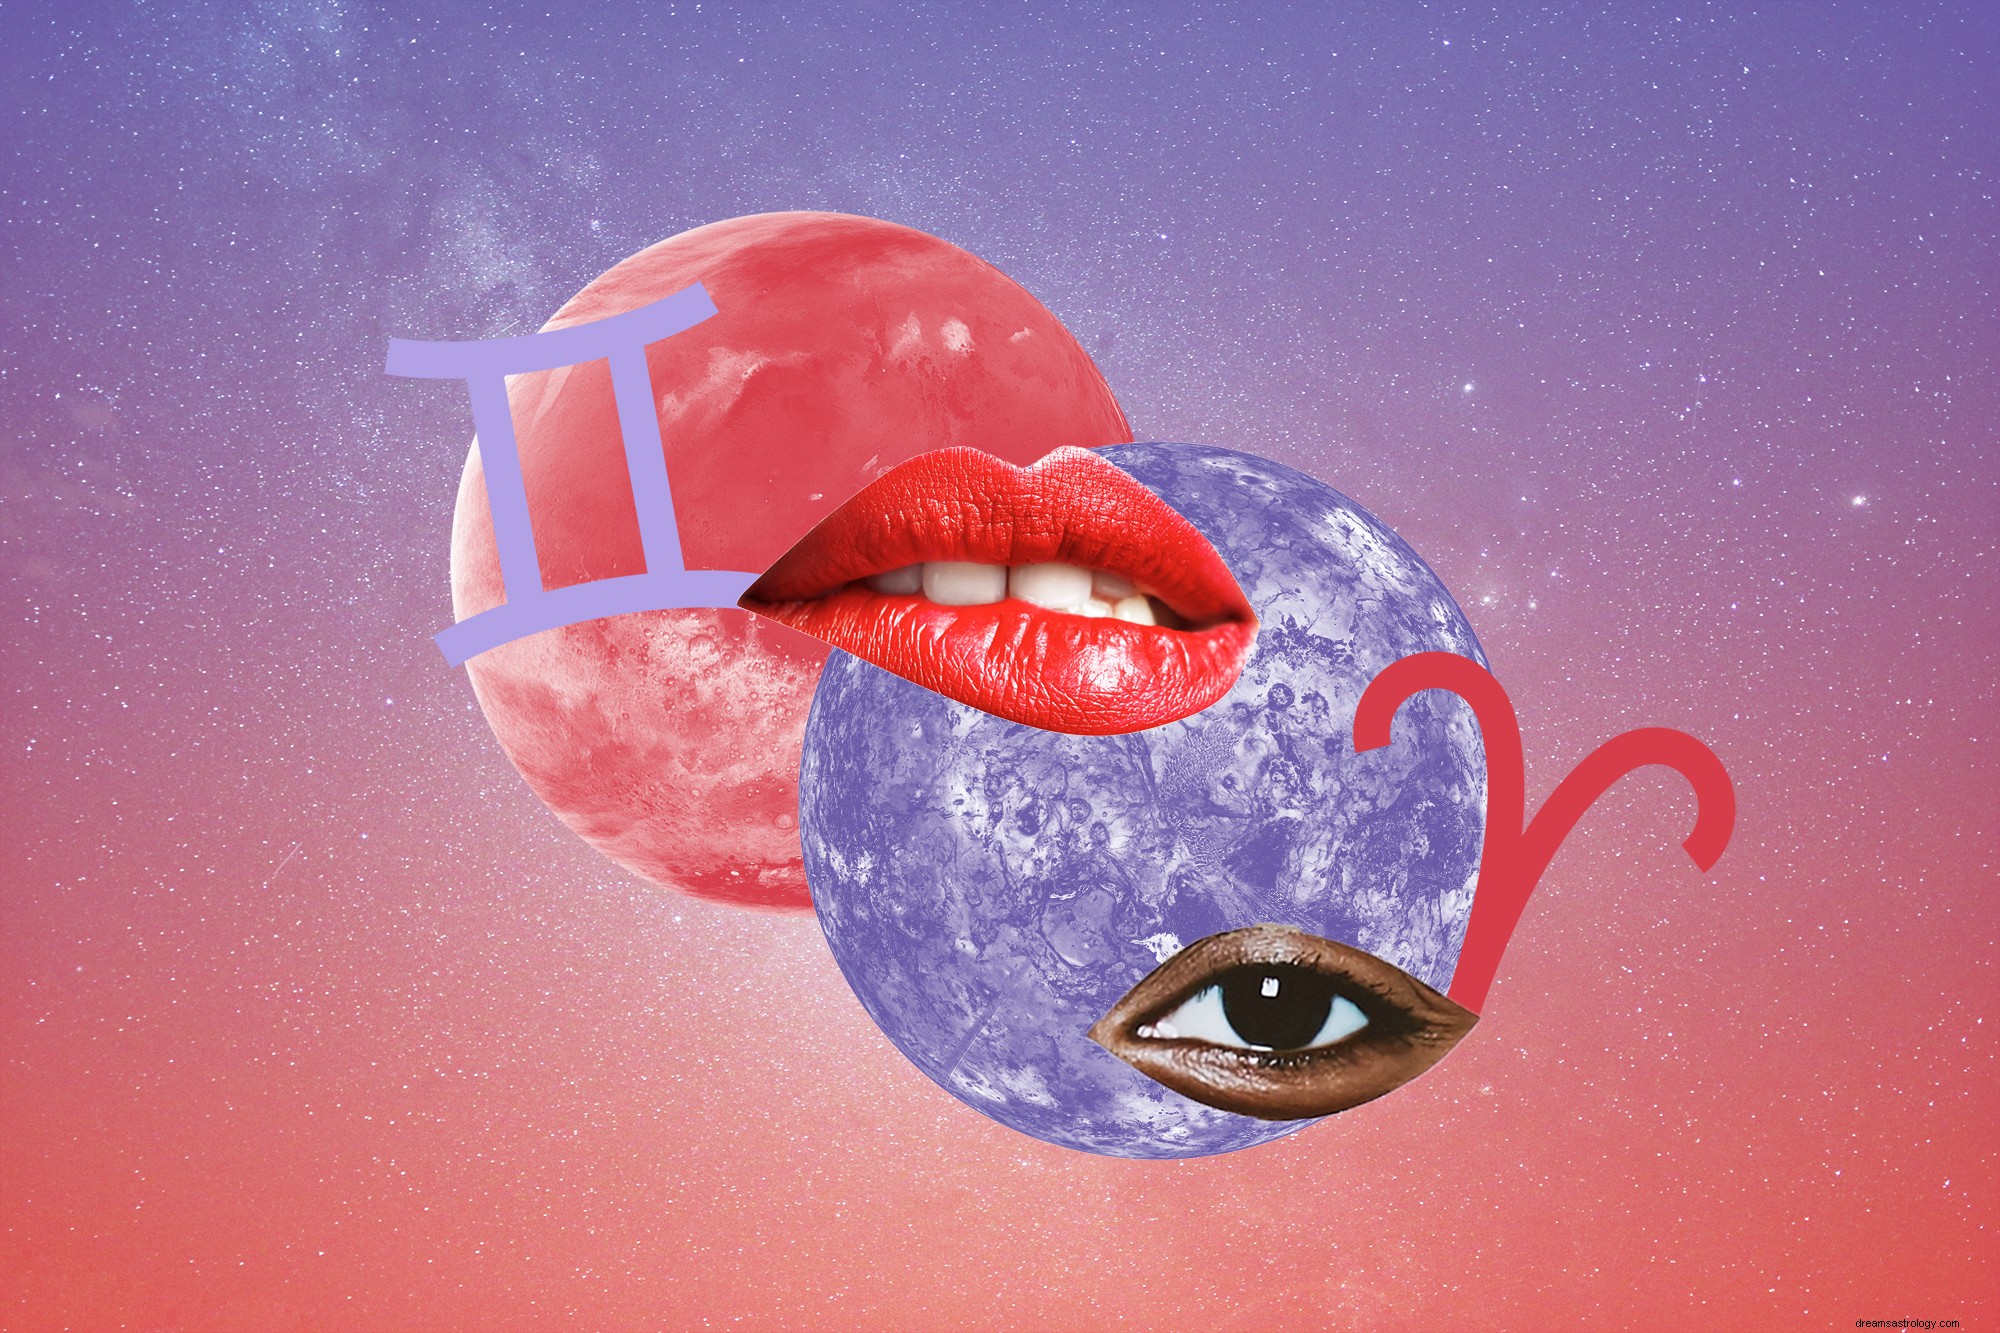 Wenus i Mars — planety romansu i seksu — będą kołysać waszym życiem miłosnym tej wiosny 